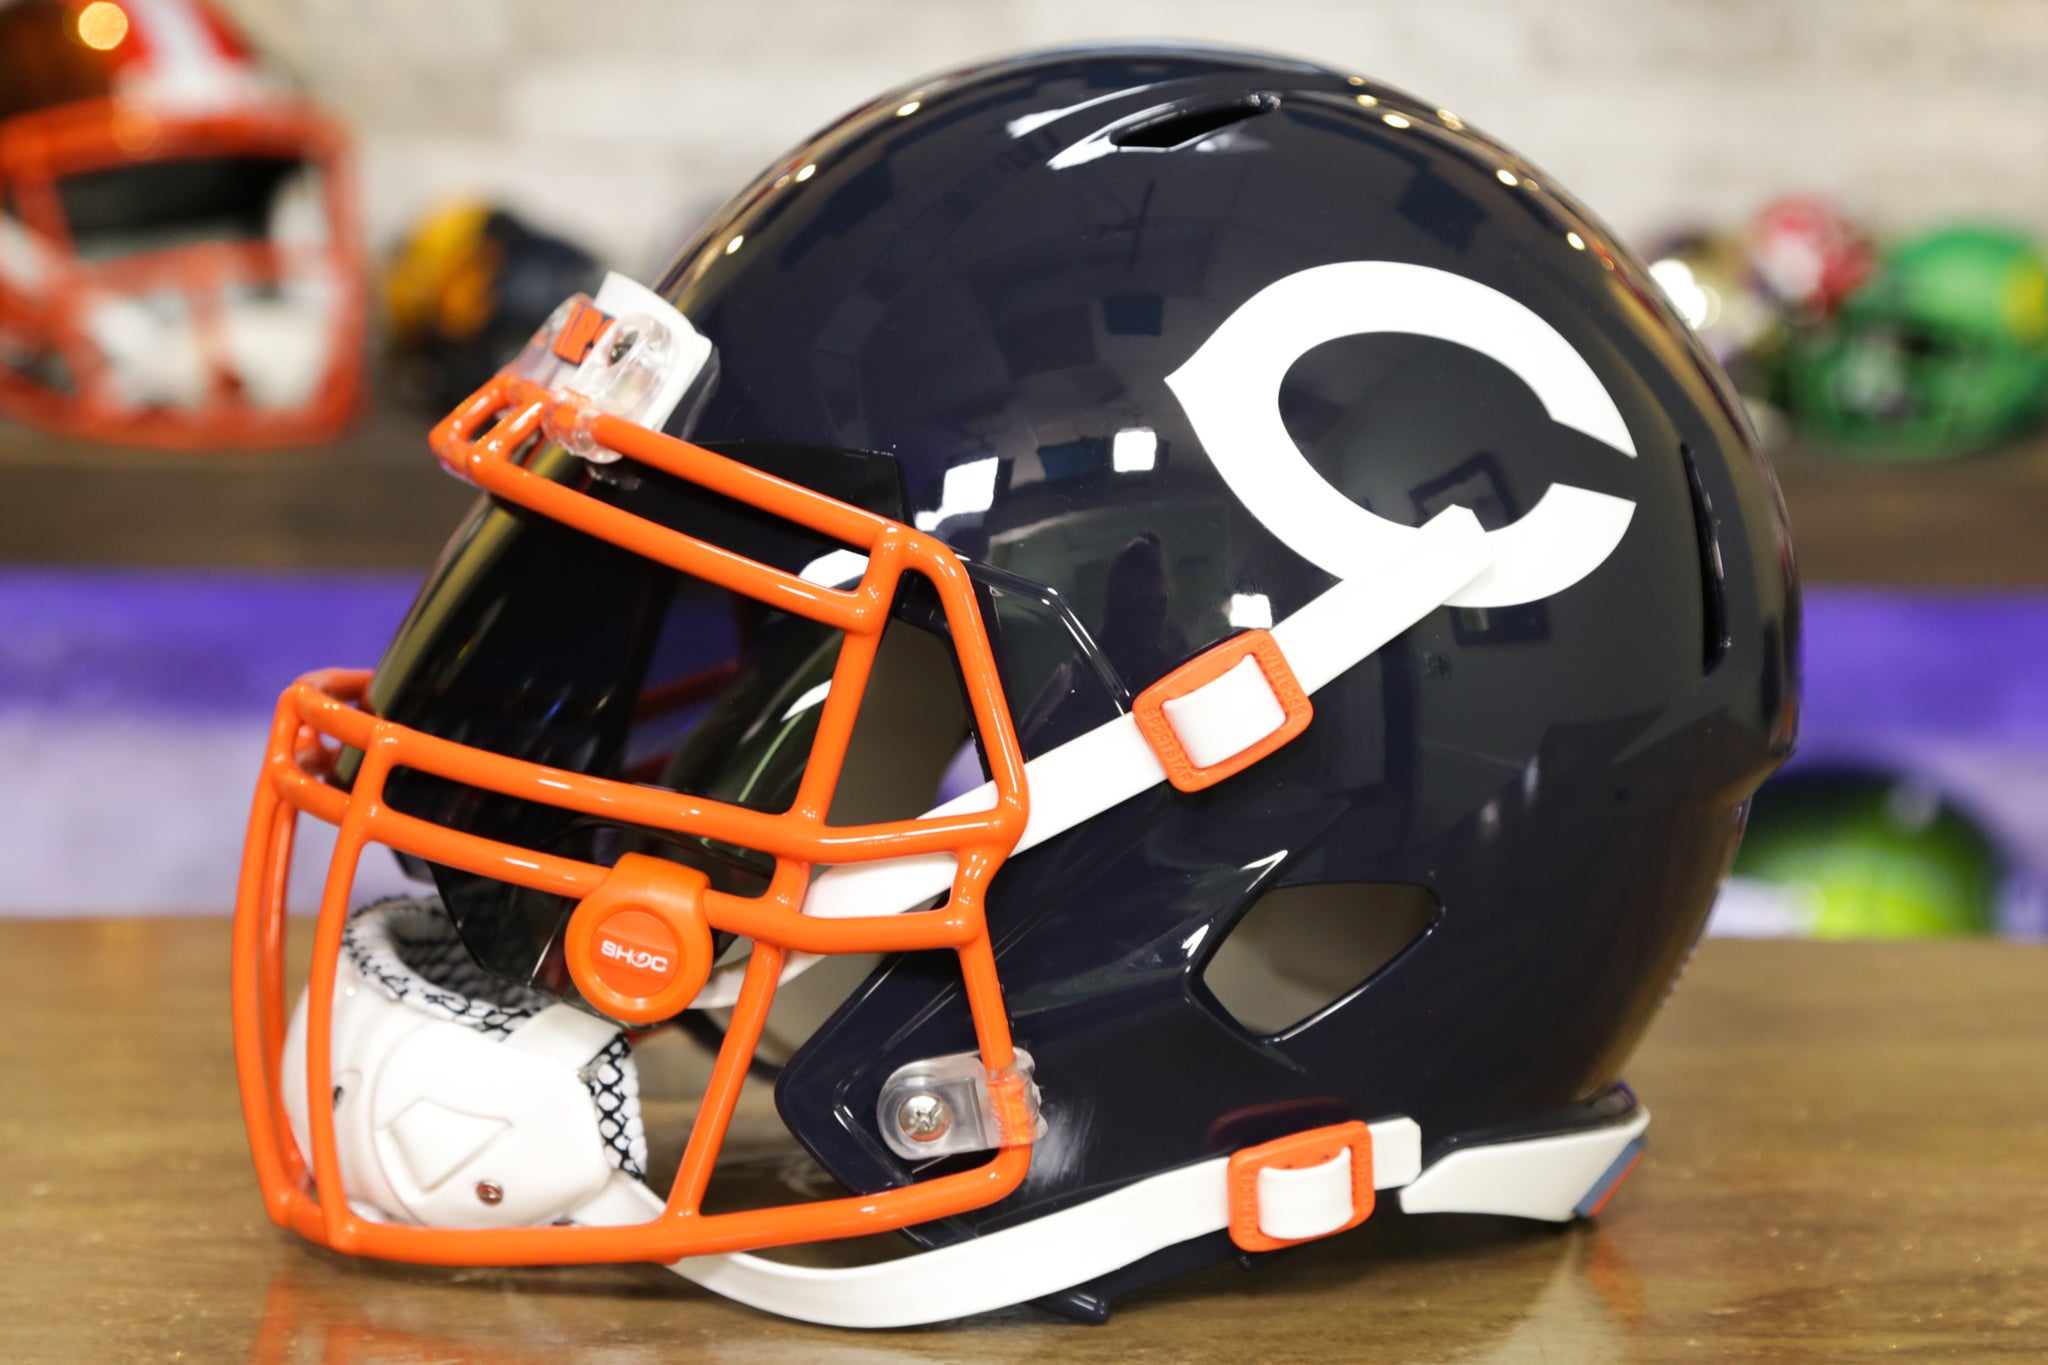 Chicago Bears Replica Riddell Throwback Mini Helmet